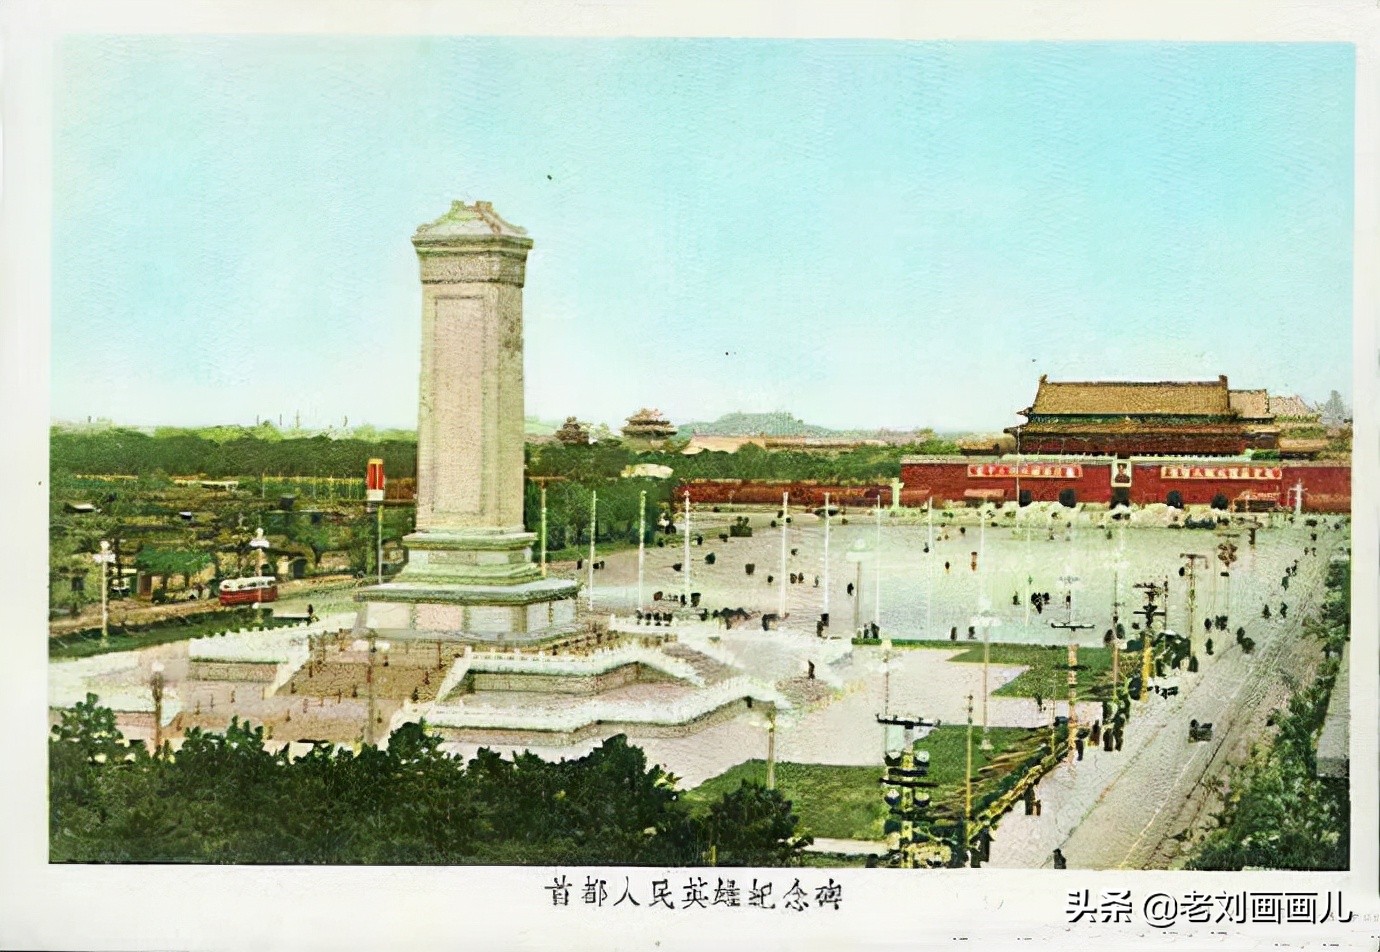 【携程攻略】北京天安门广场景点,天安门的大气和壮阔 ，不是一般建筑物能够比拟的。白天的天安门壮观…